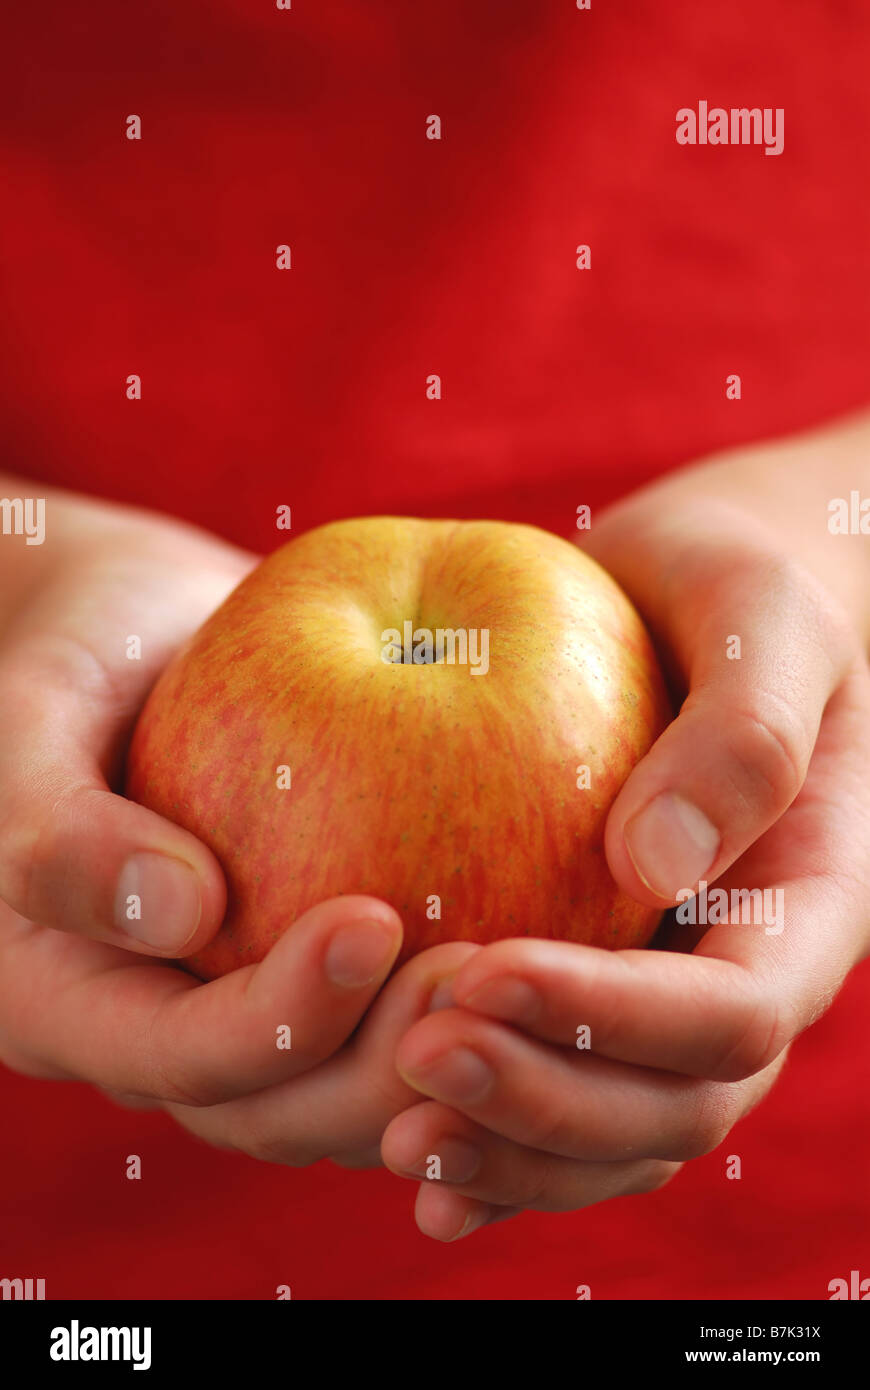 Kind s Hände halten einen Apfel auf rotem Grund Stockfoto